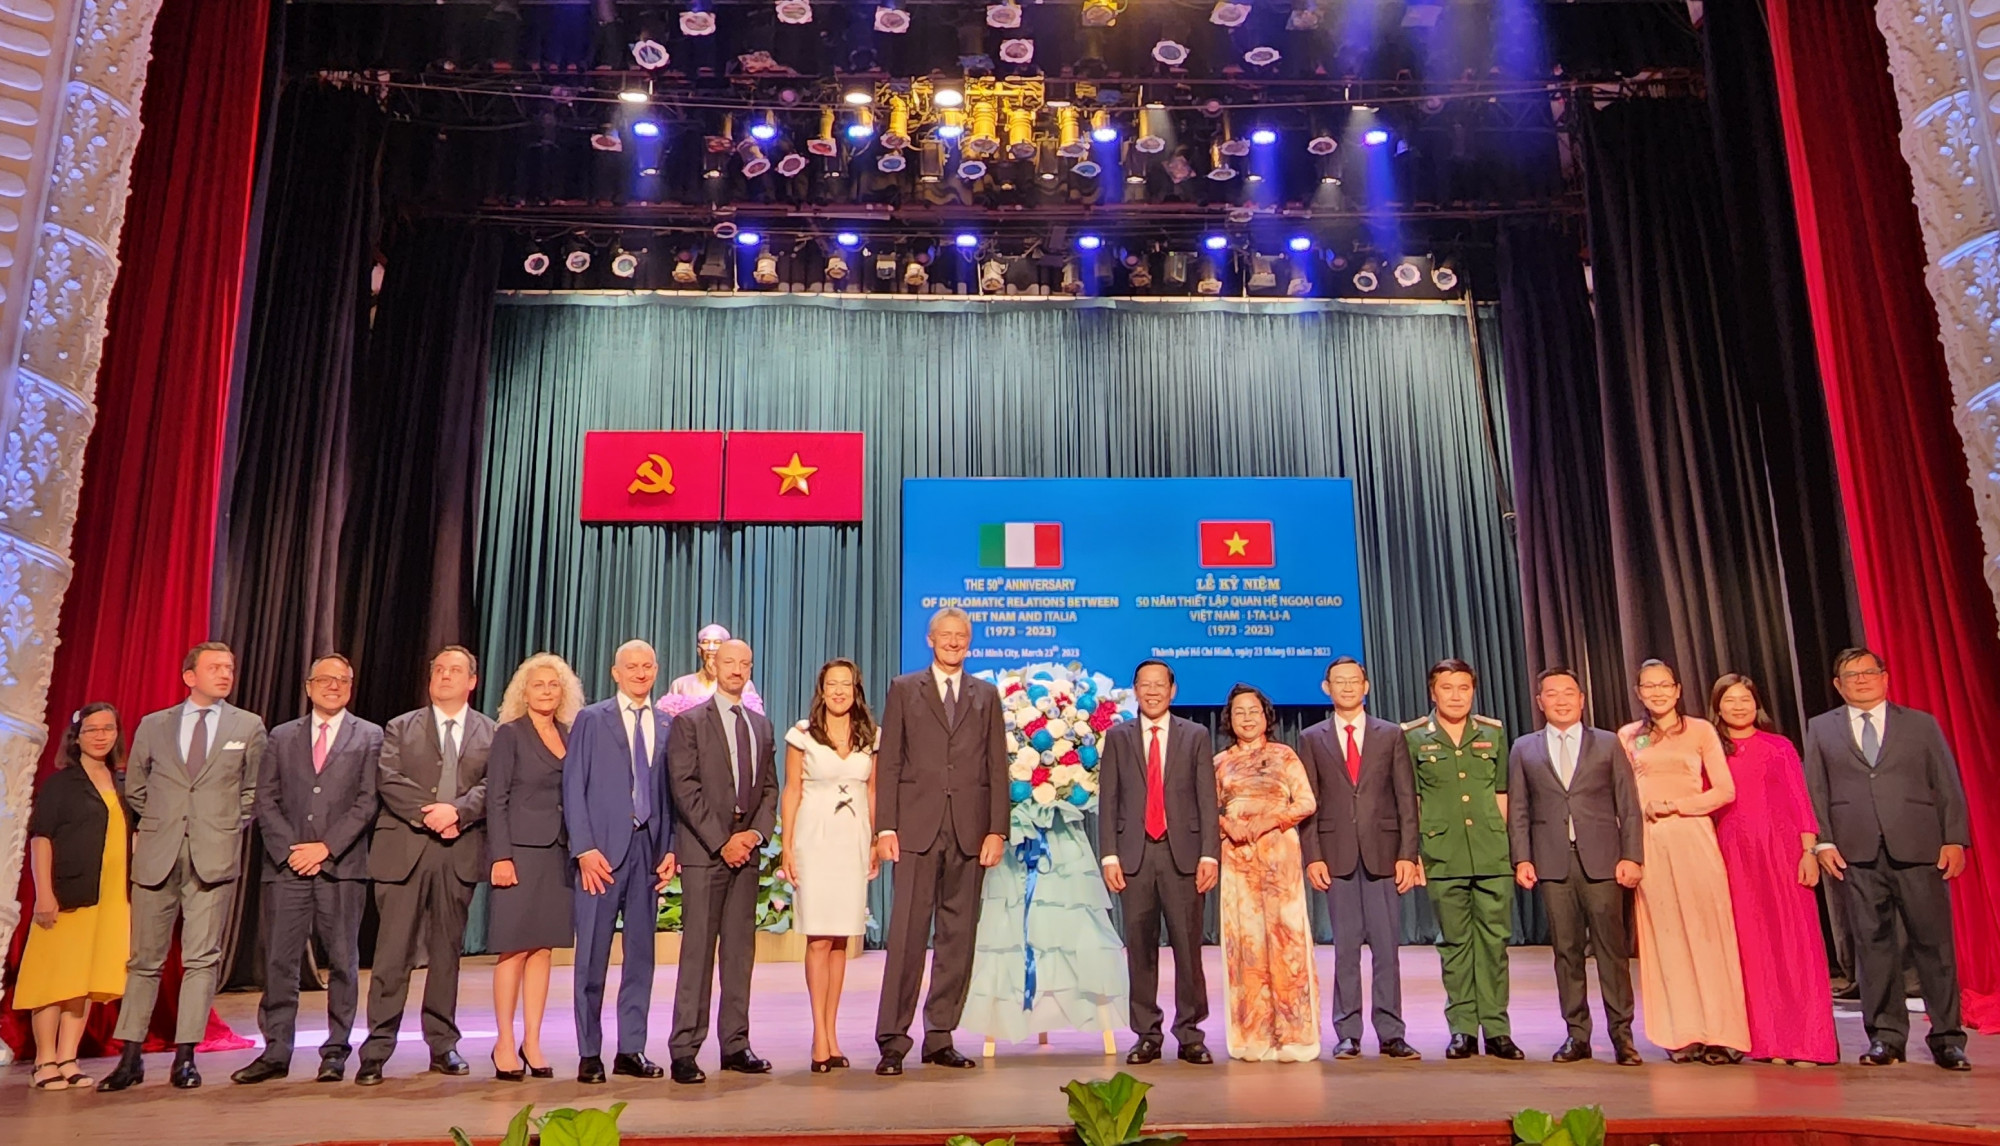 Phái đoàn lãnh sự Italia và các cấp lãnh đạo Thành phố Hồ Chí Minh cùng chụp ảnh lưu niệm